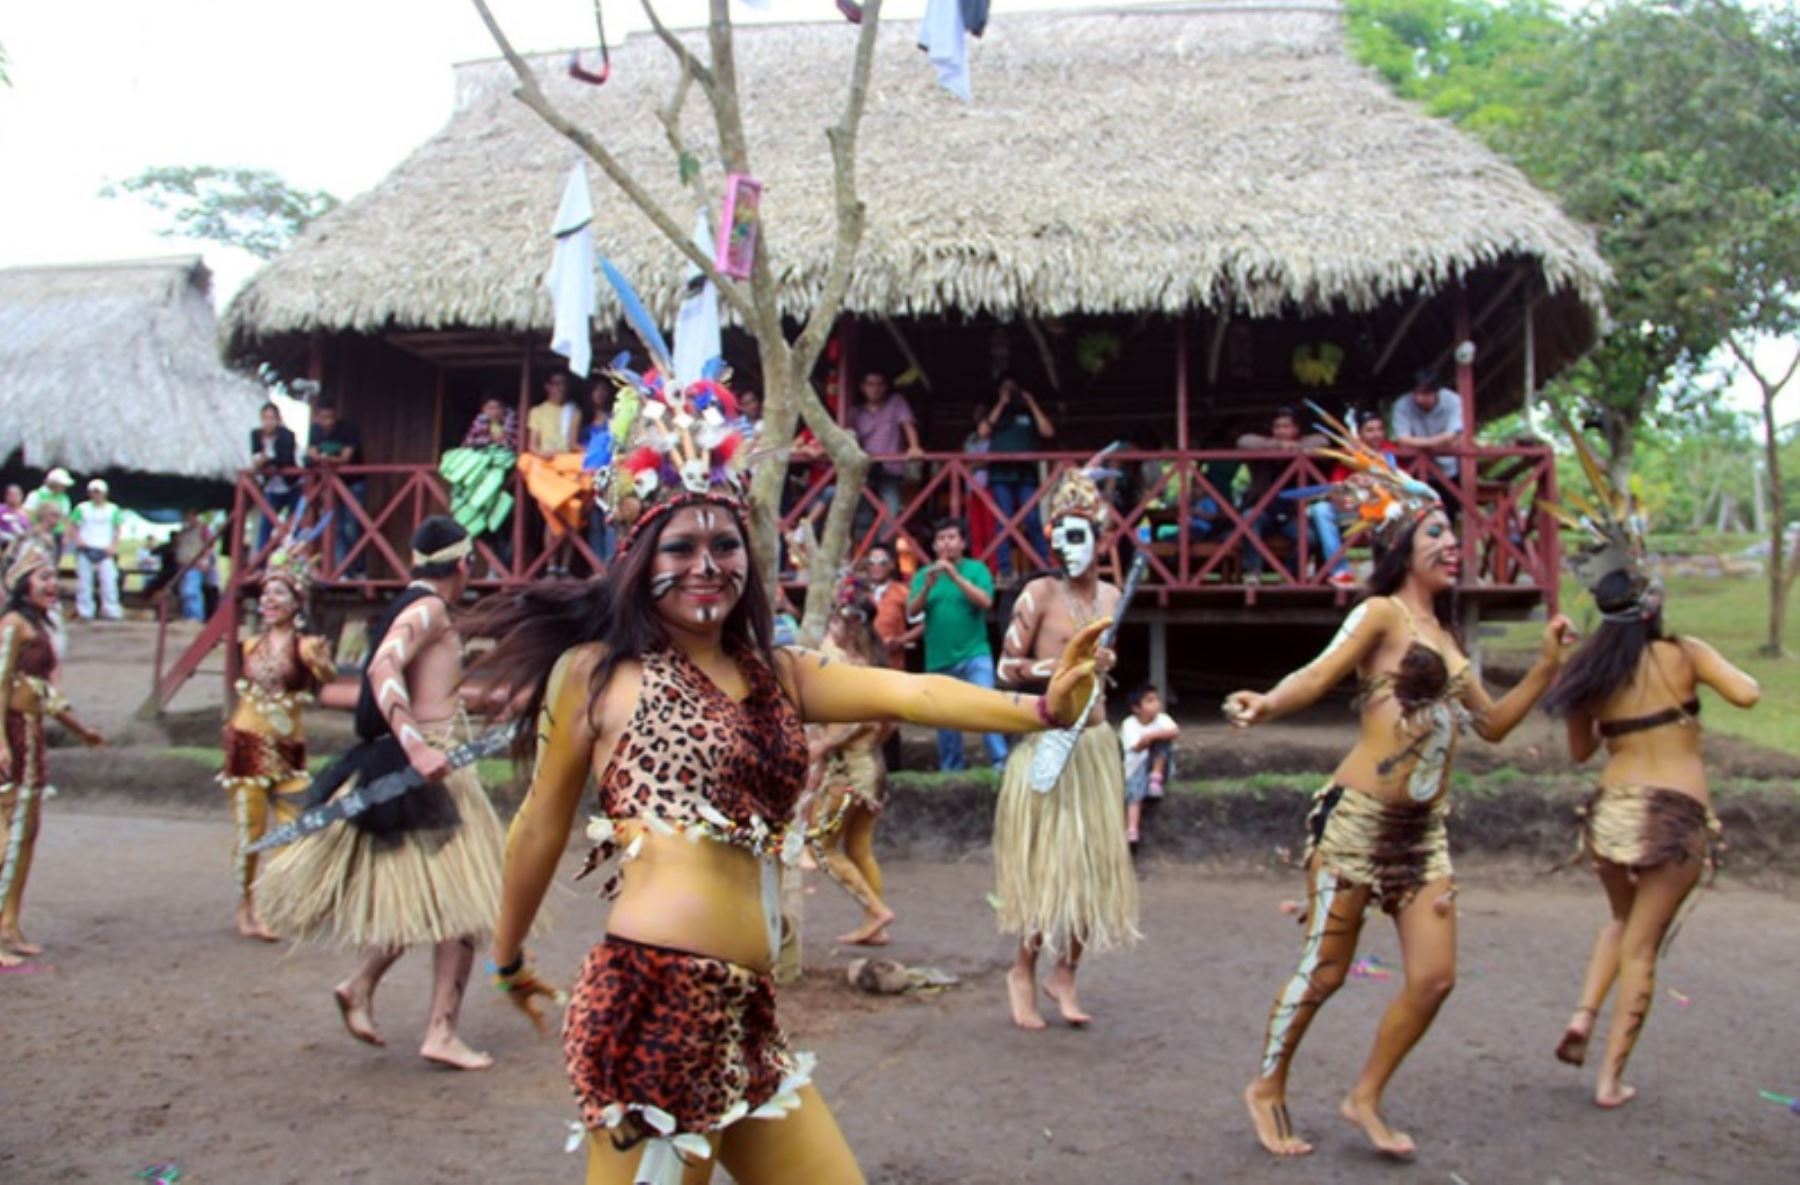 Los pueblos de la Amazonía peruana en su totalidad celebran hoy la tradicional Fiesta de San Juan con danzas y música llenas de alegría, en honor a su santo patrono.